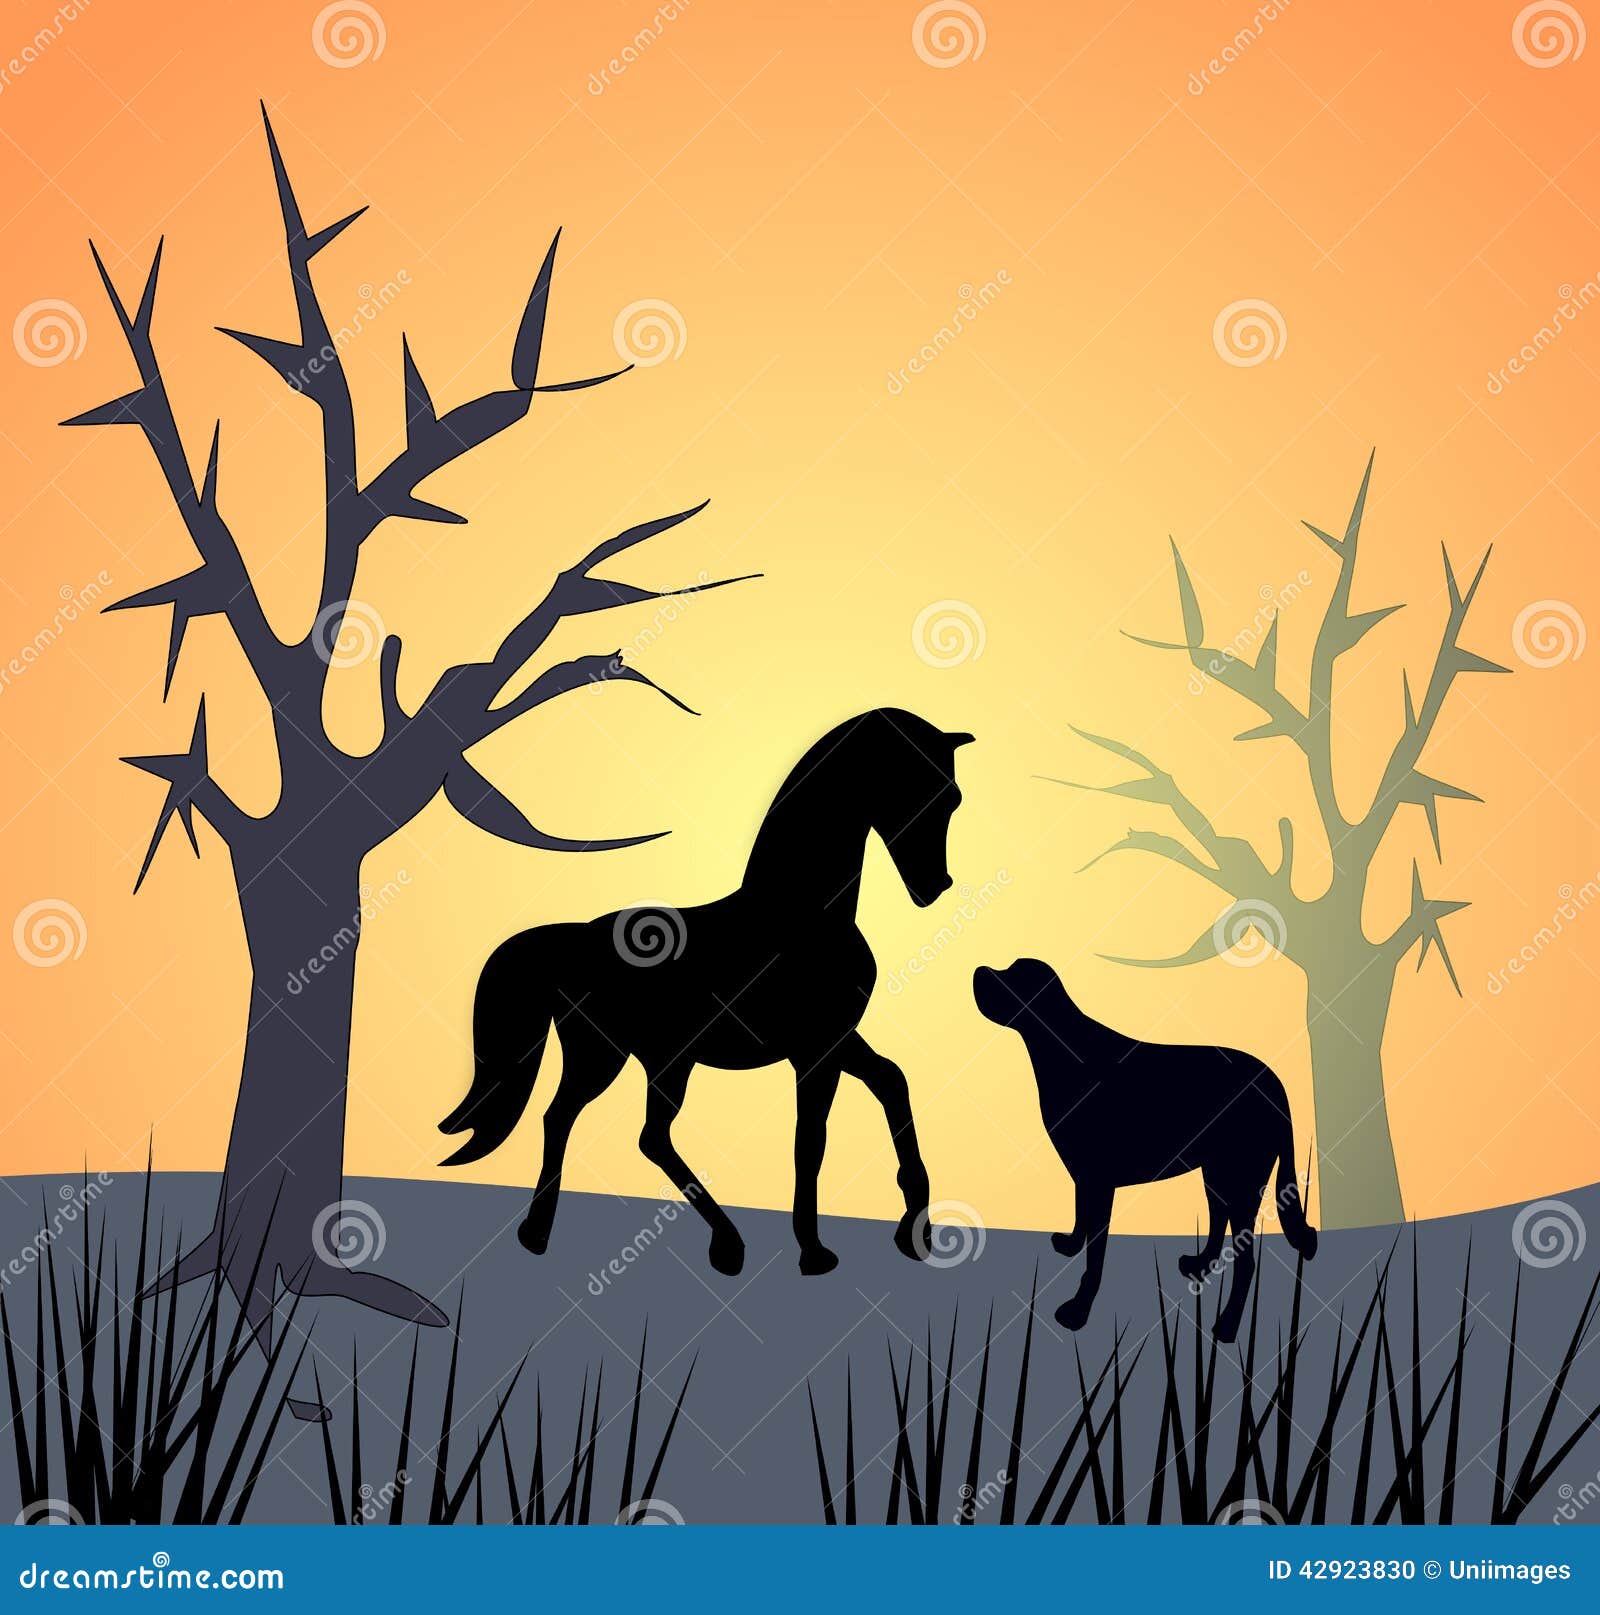 pferd und hund durch sonnenuntergang stock abbildung